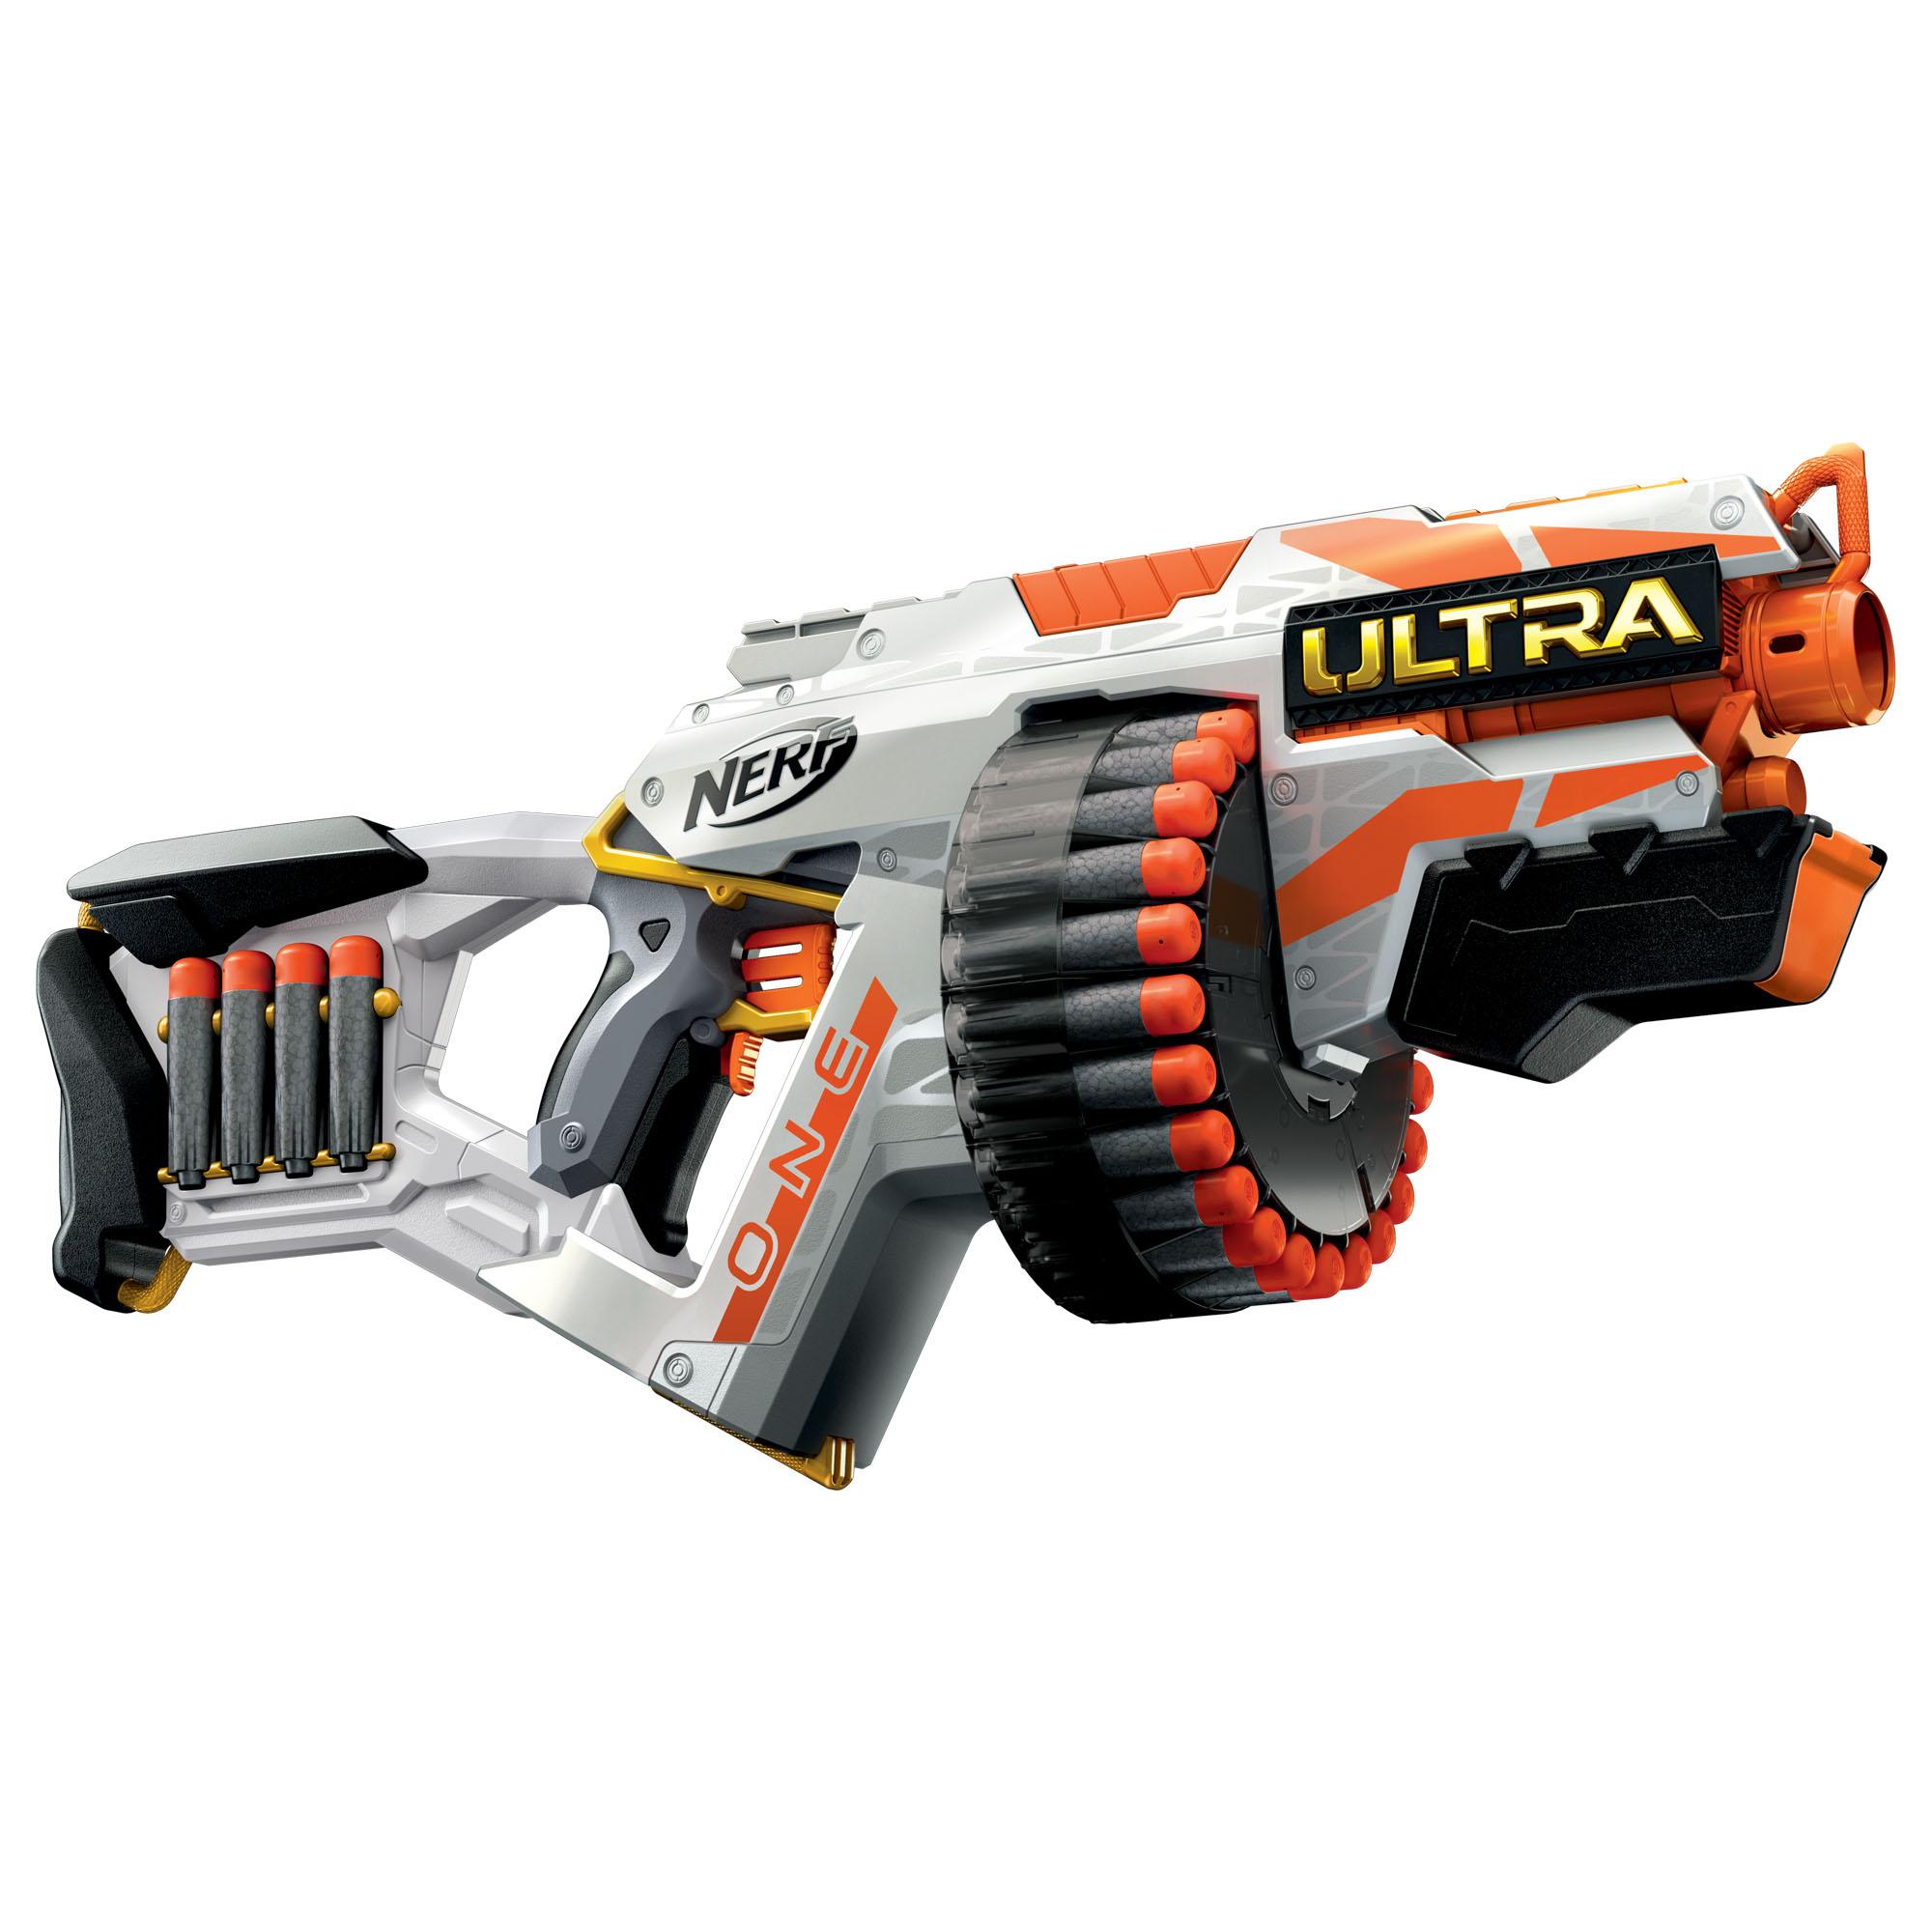 Nerf Ultra One motoriserad blaster, 25 Nerf Ultra-pilar – Fungerar endast med Nerf Ultra One-pilar